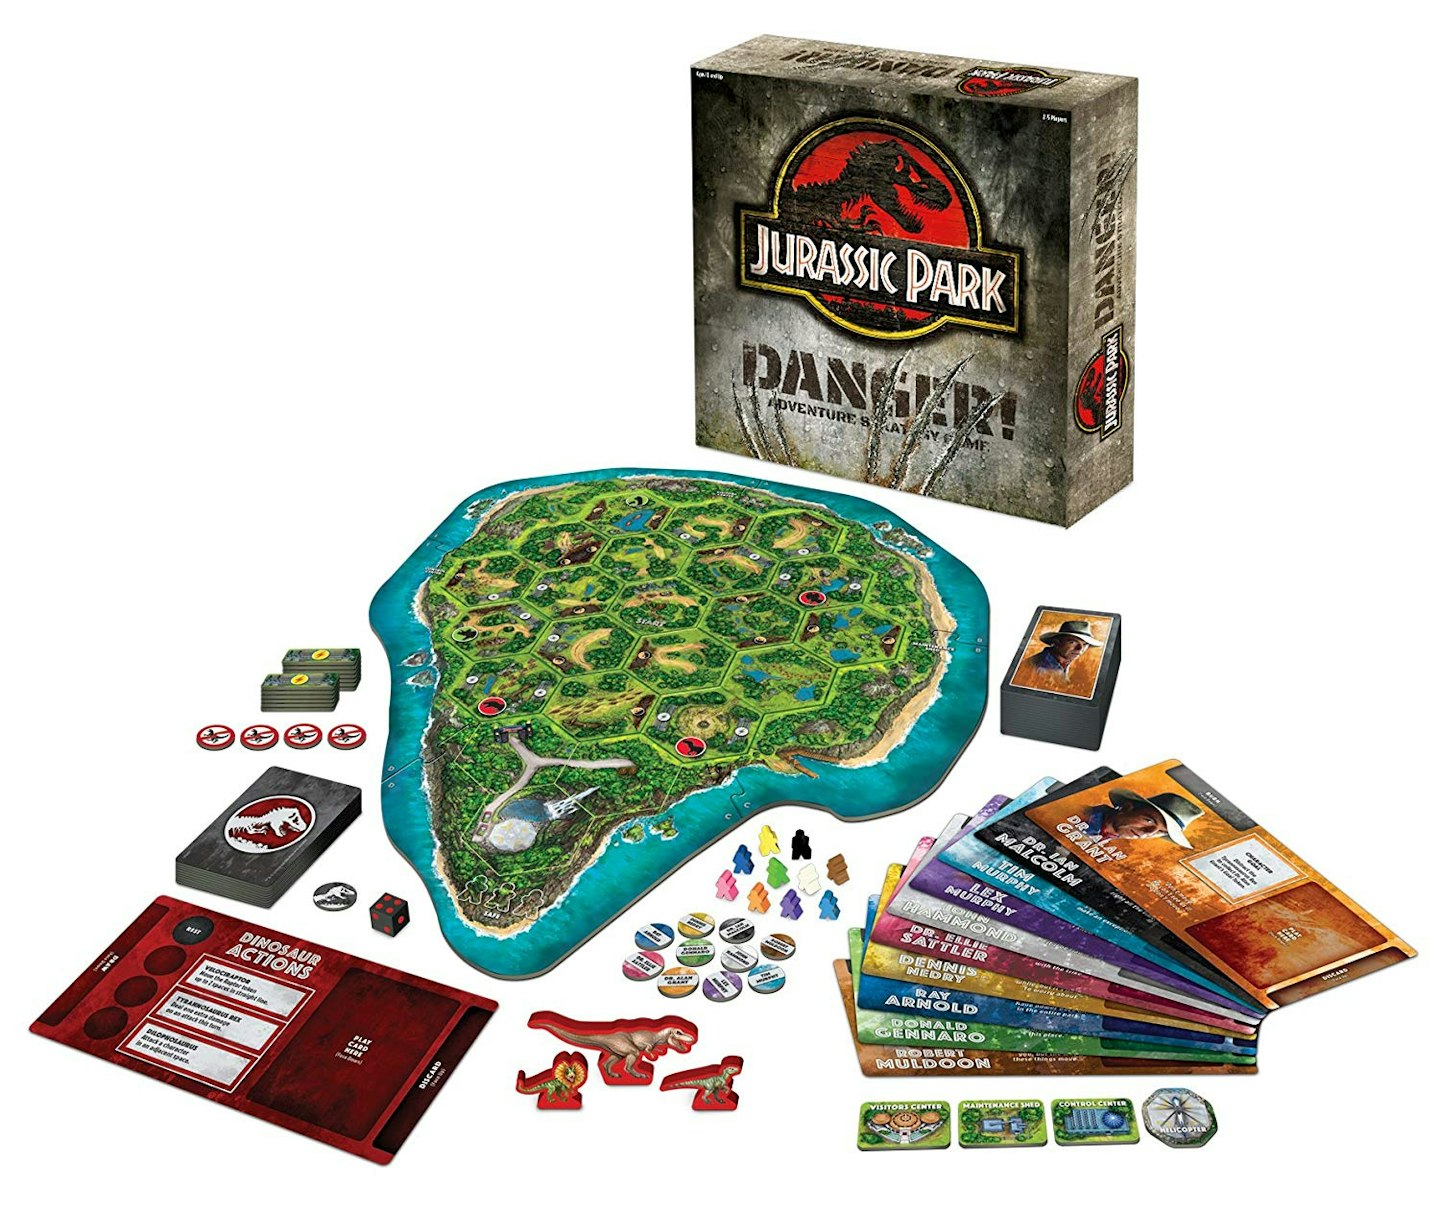 Ravensburger Jurassic Park Danger! - Adventure Strategy Game, £24.99